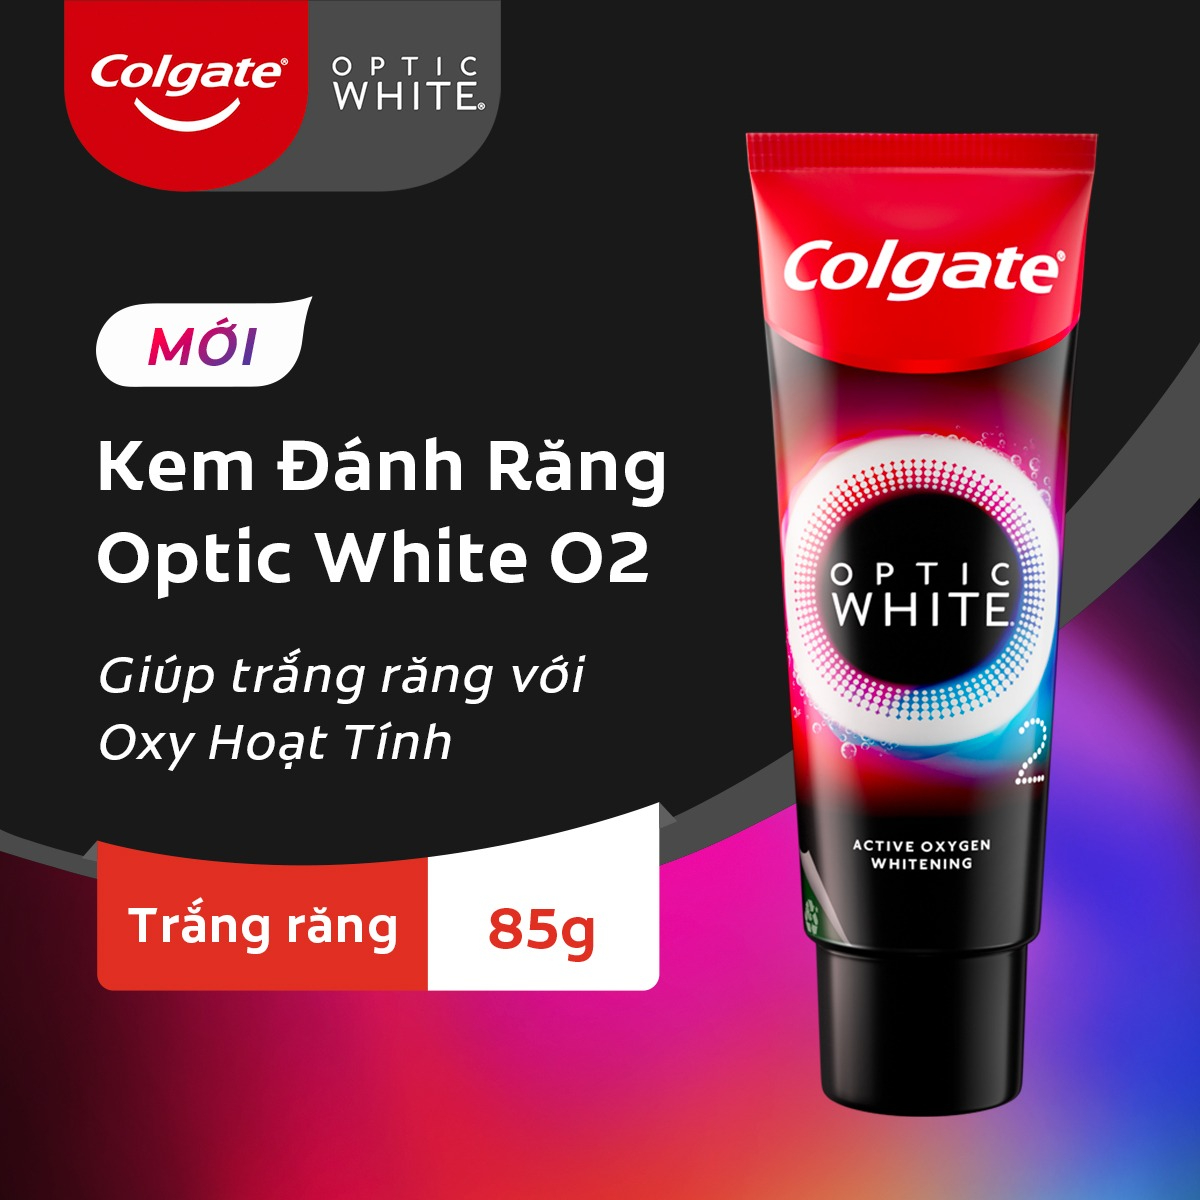 Kem Đánh Răng Colgate Optic White O2 Với Oxy Hoạt Tính 85g